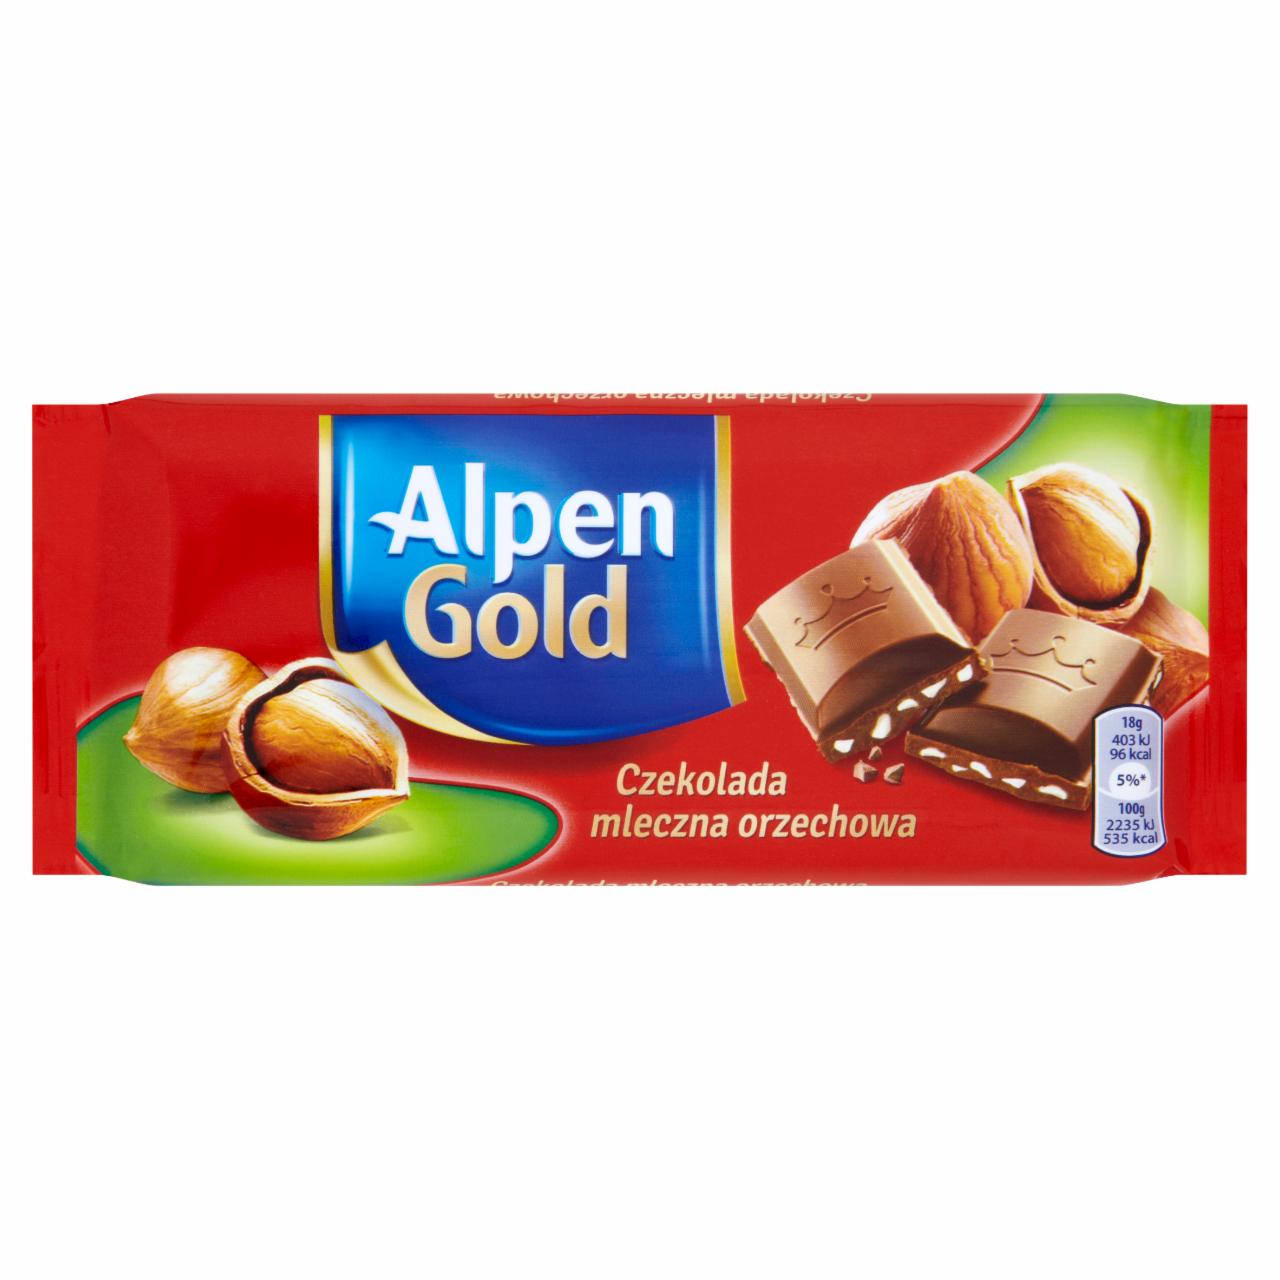 Zdjęcia - Alpen Gold Czekolada mleczna orzechowa 90 g